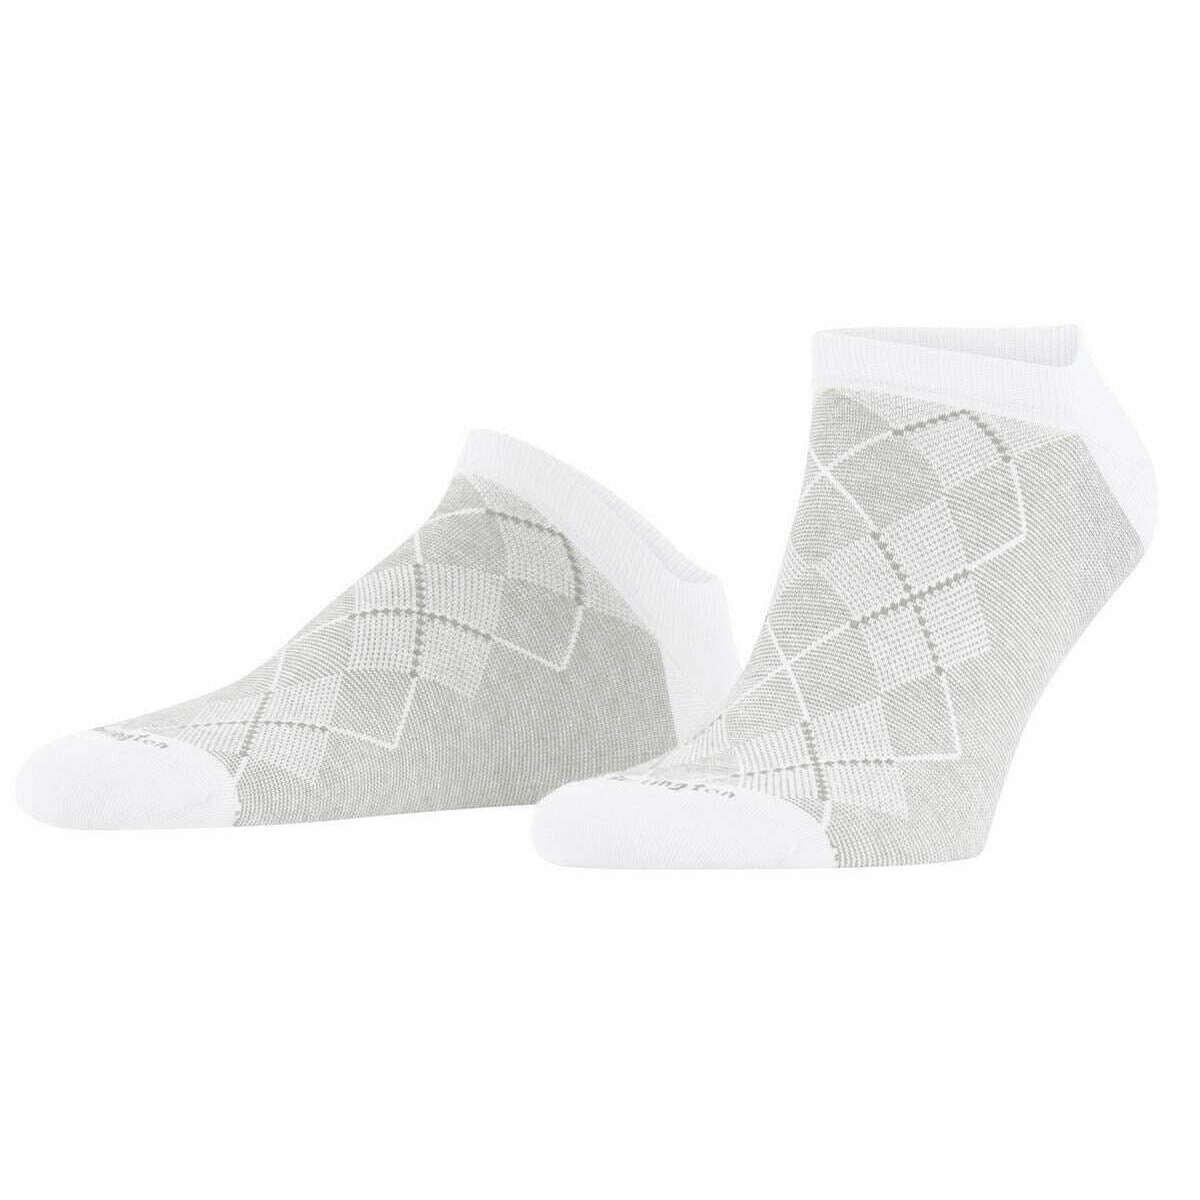 Burlington Carrington Sneaker Socks - White